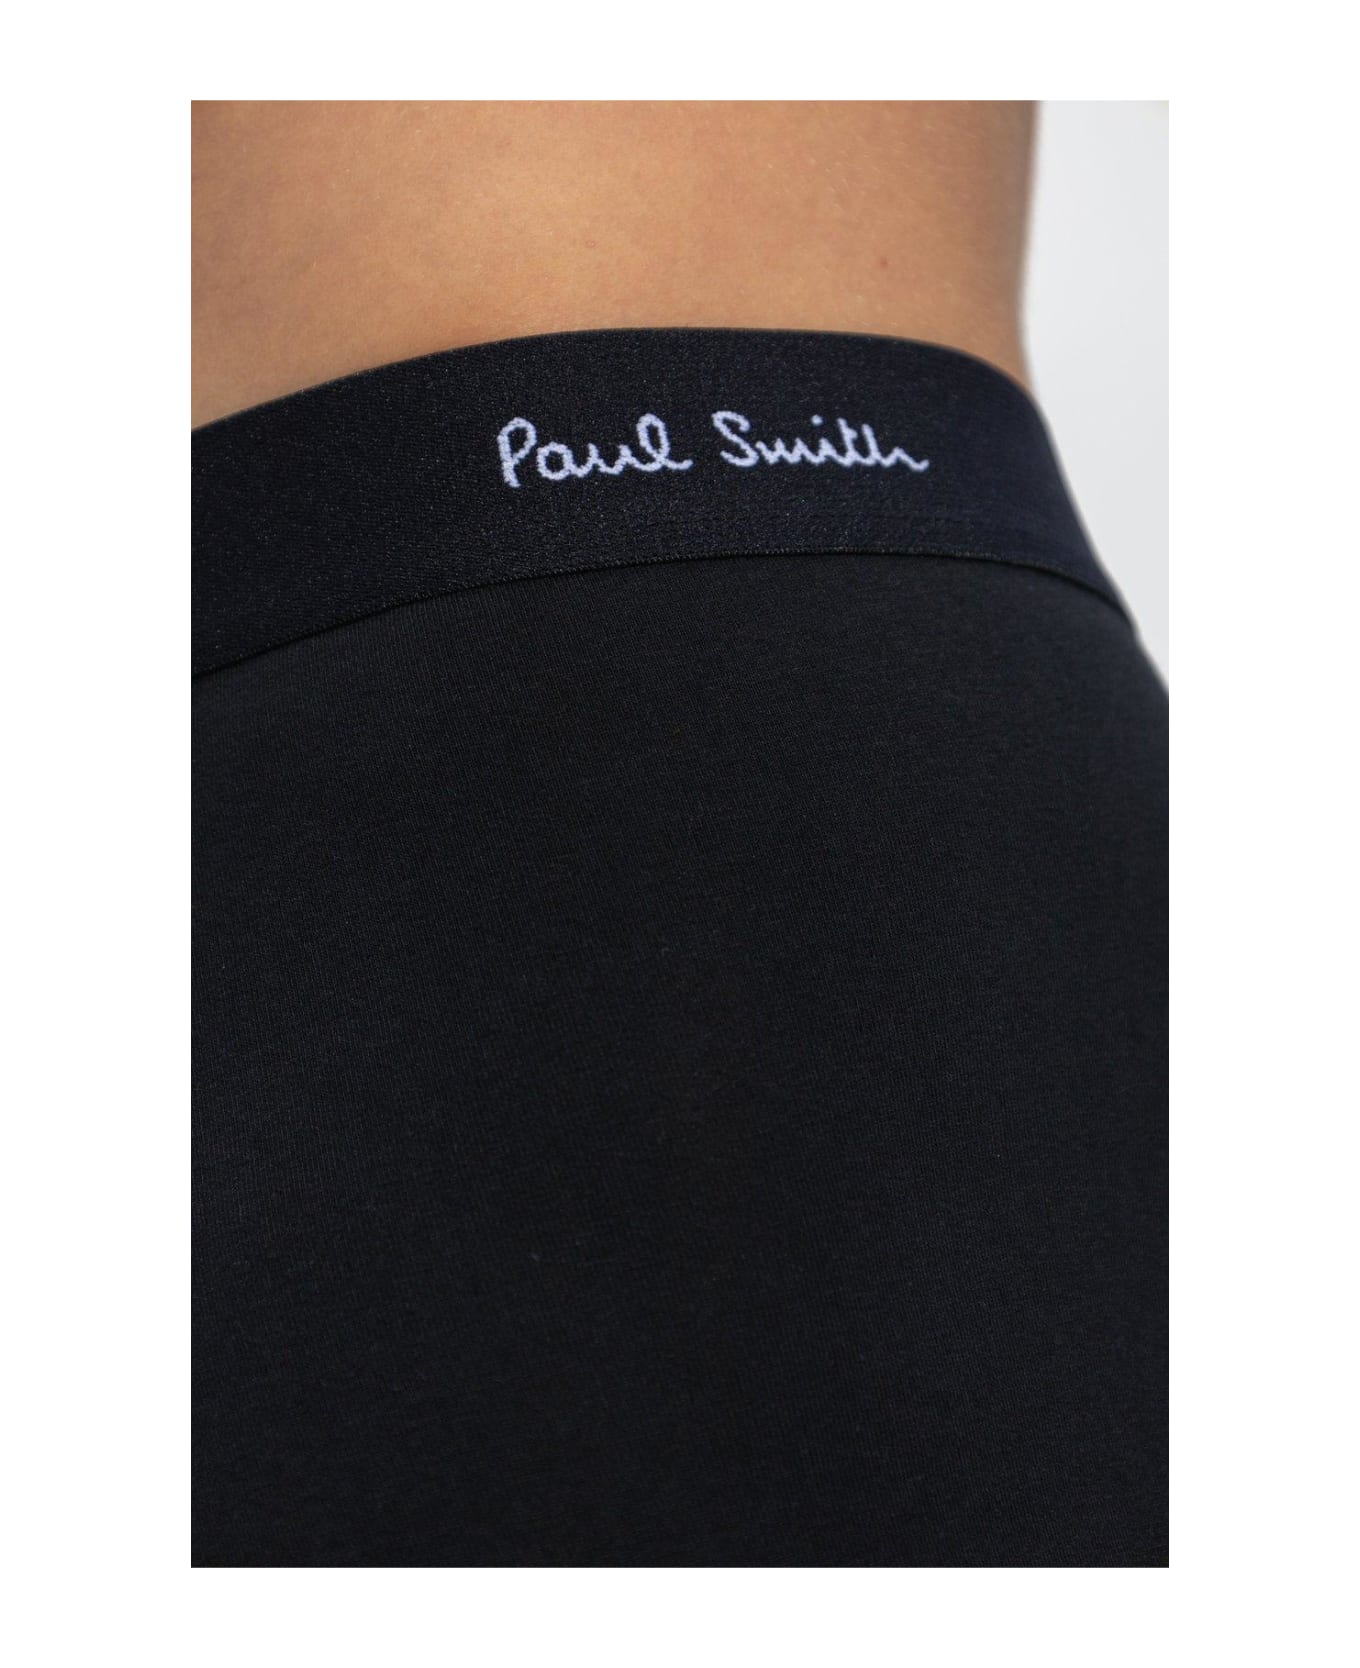 Paul Smith Branded Boxers 3 Pack - Nero e Multicolore